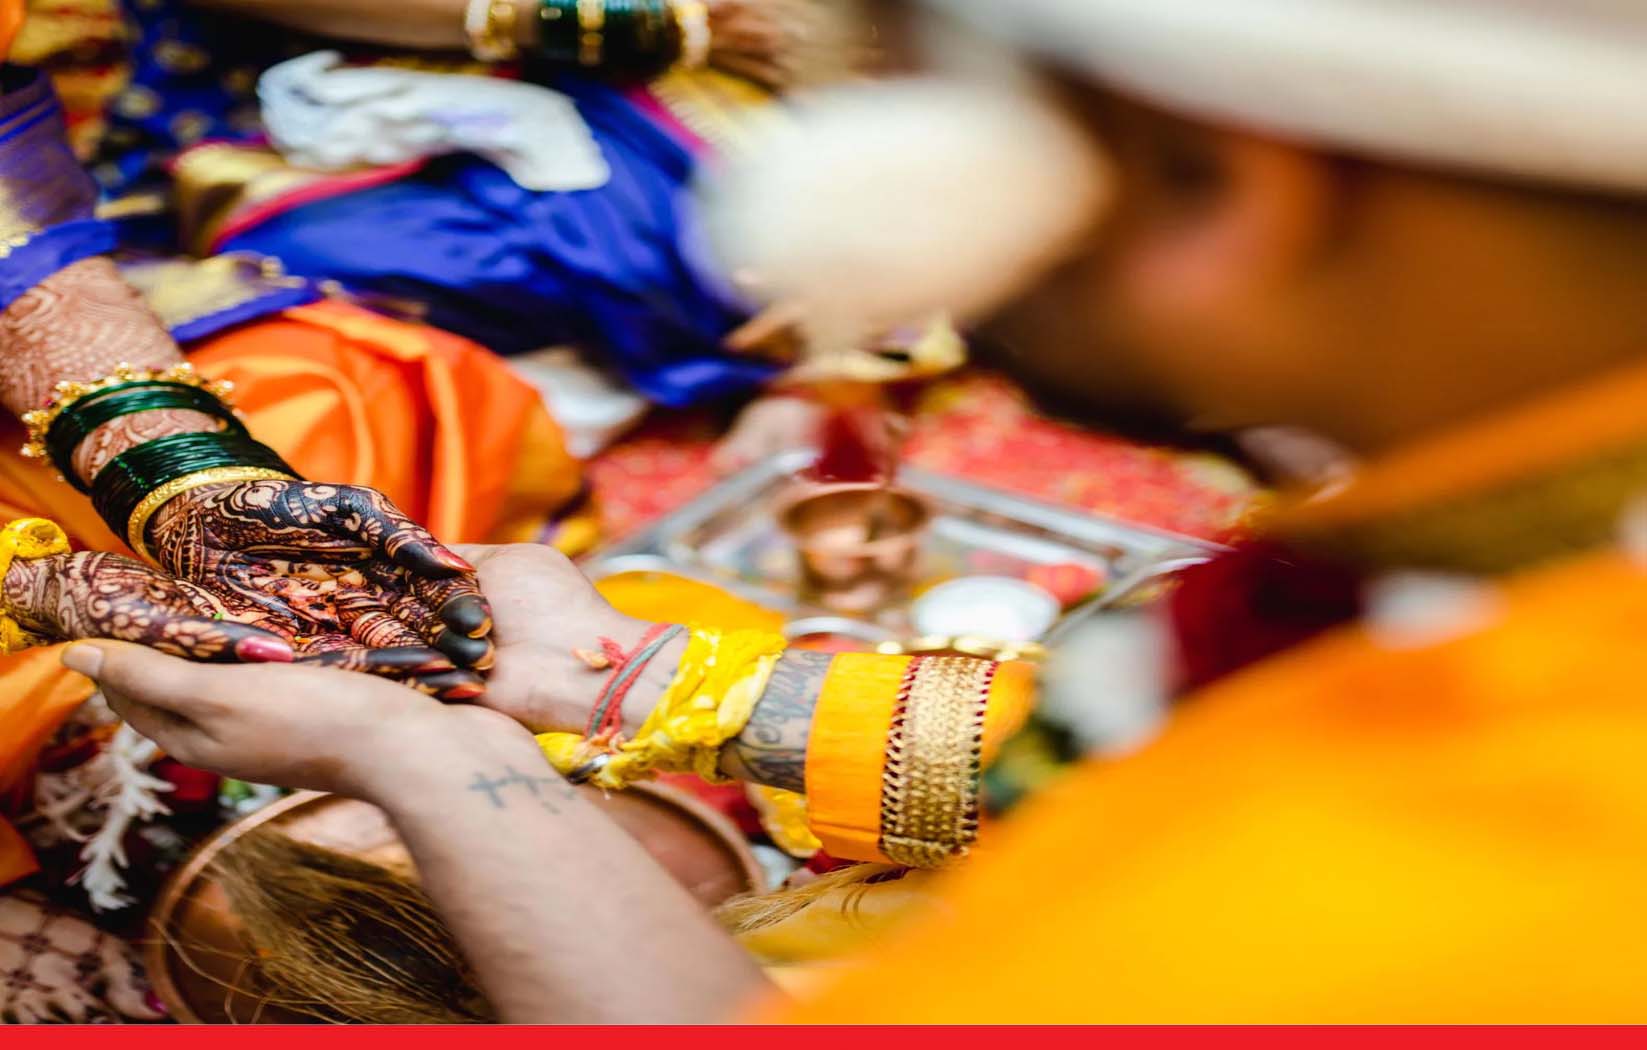 बाजार में बिकते हैं दूल्हे, भारत के एक गांव में 700 सालों से चली आ रही हैं विवाह की प्रथा